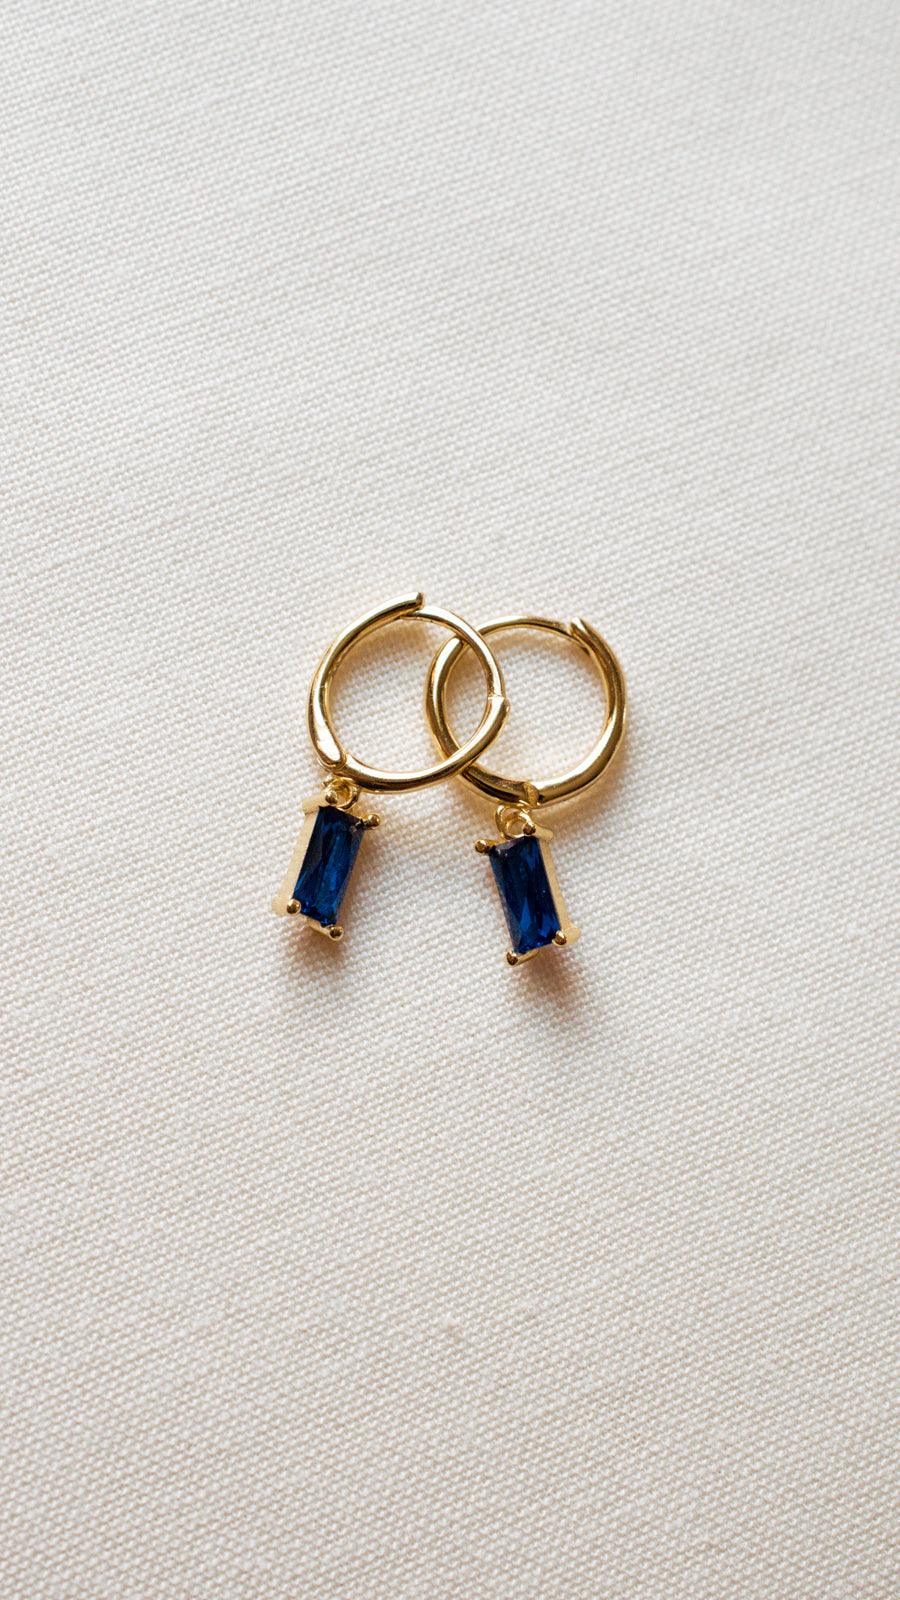 blue baguette dangle earrings by Avante Jewel